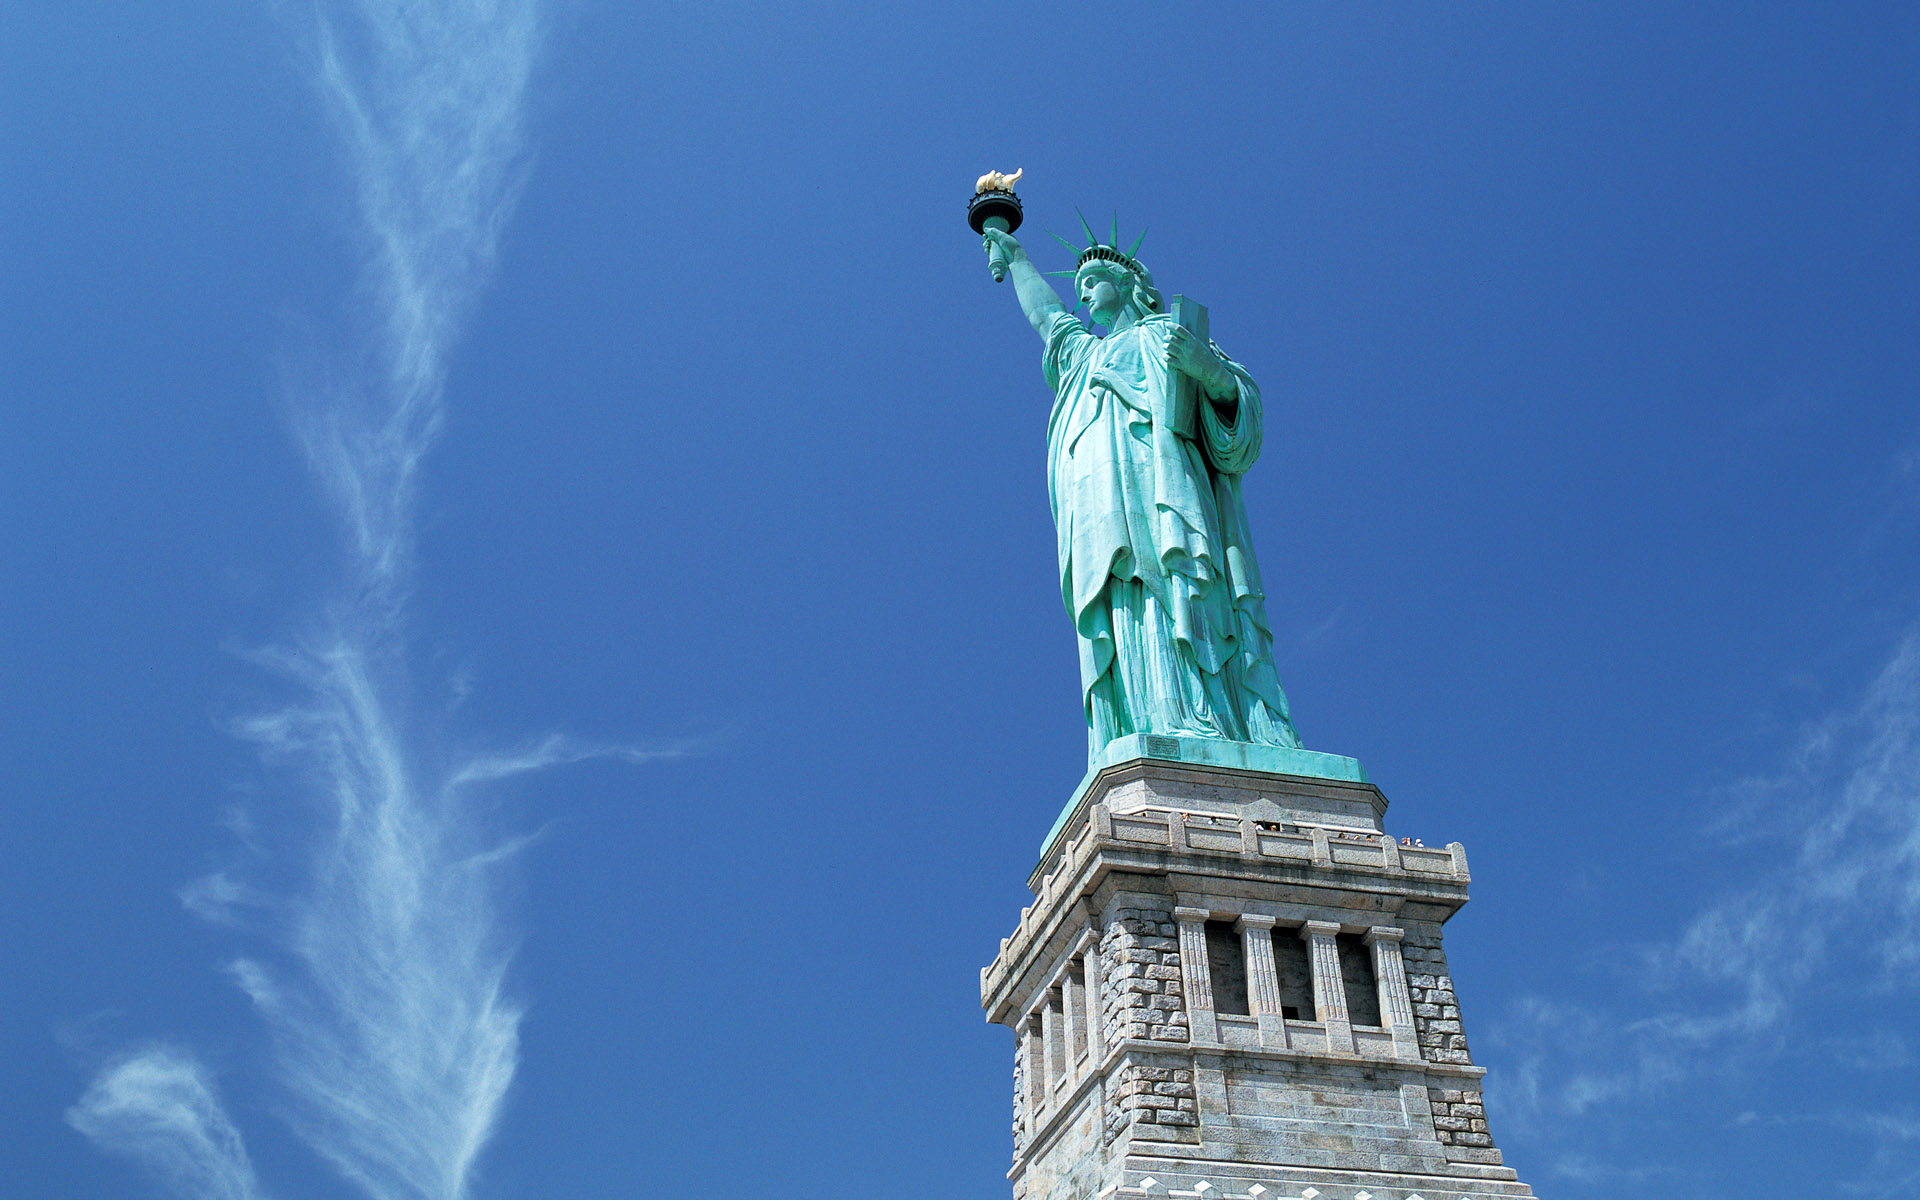 壁紙 アメリカ合衆国 空 自由の女神像 都市 ダウンロード 写真